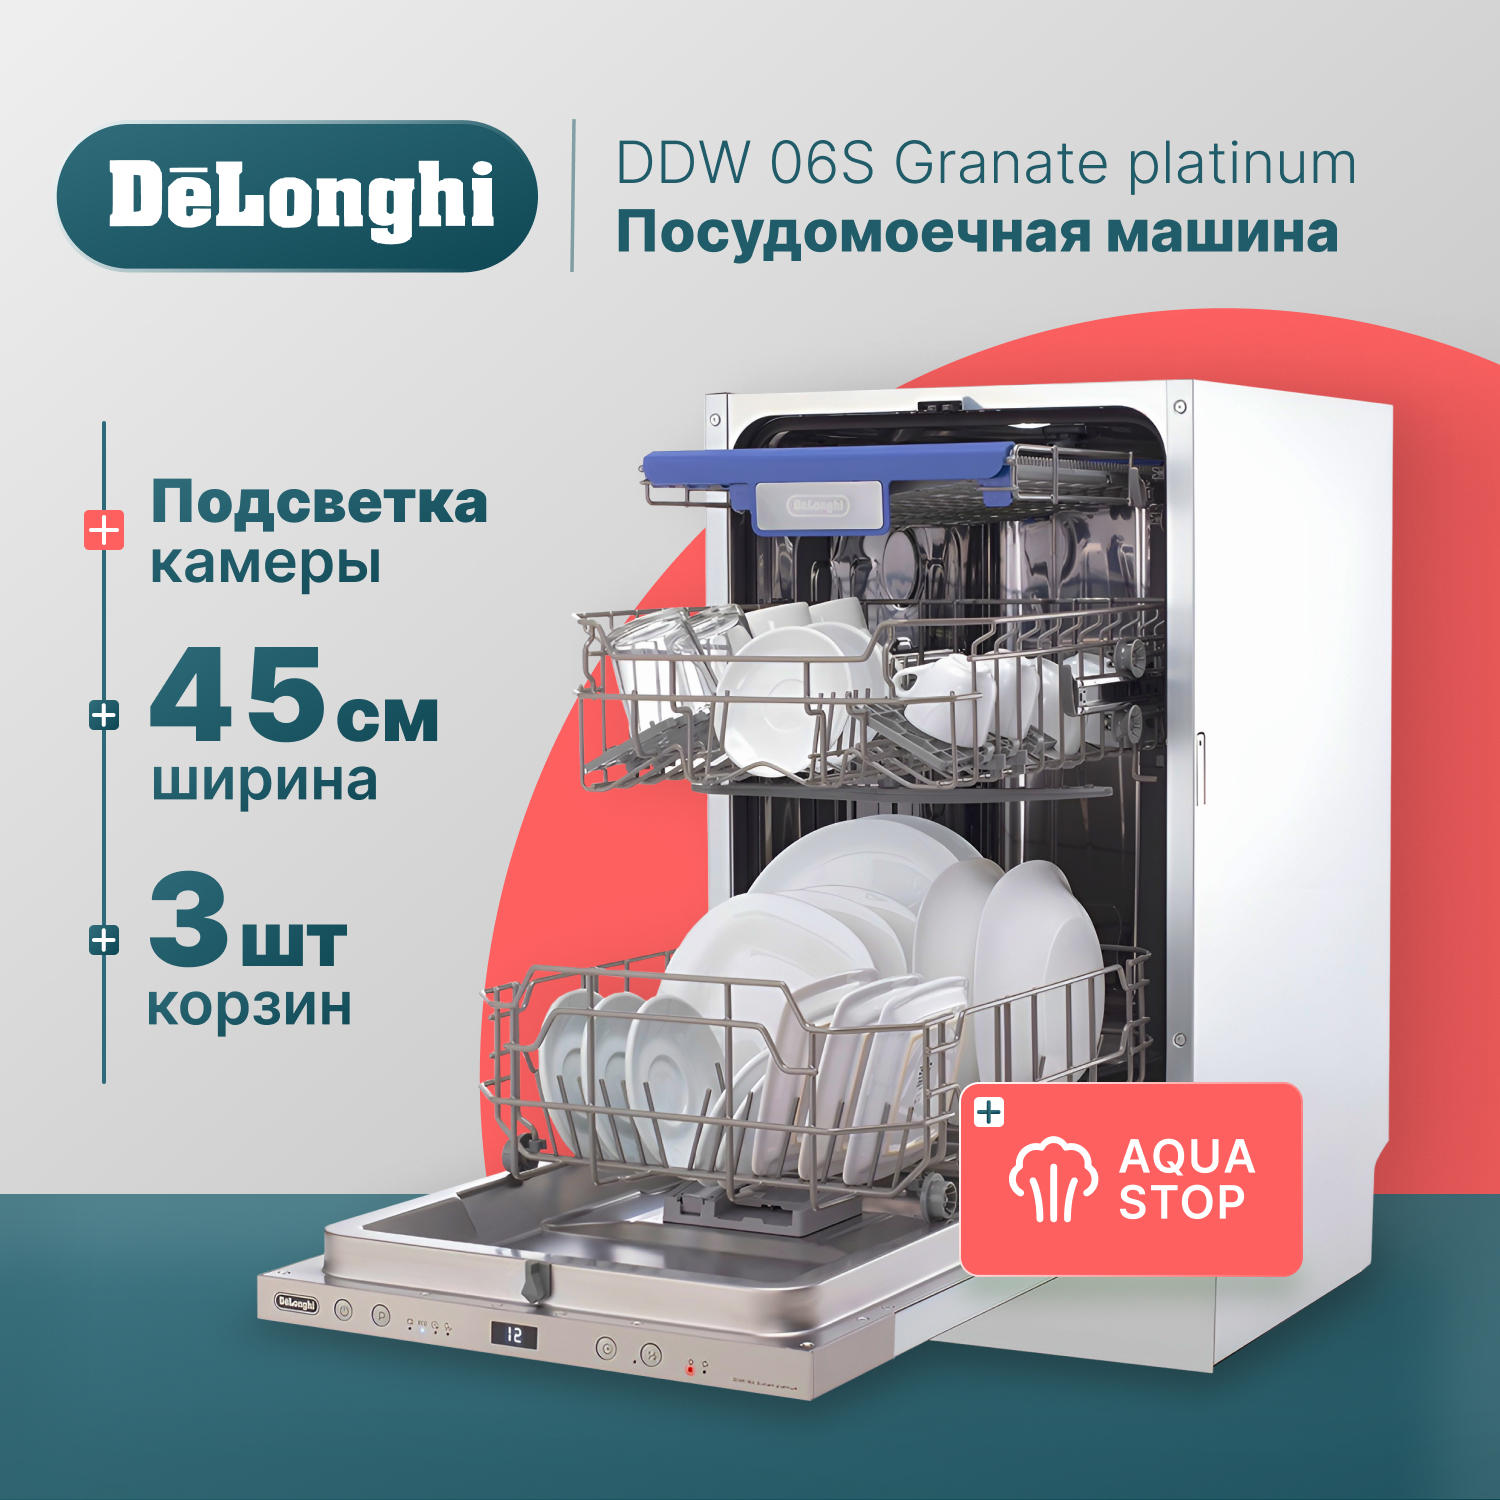 Встраиваемая посудомоечная машина Delonghi DDW06S Granate platinum встраиваемая посудомоечная машина delonghi ddw06f granate platinum